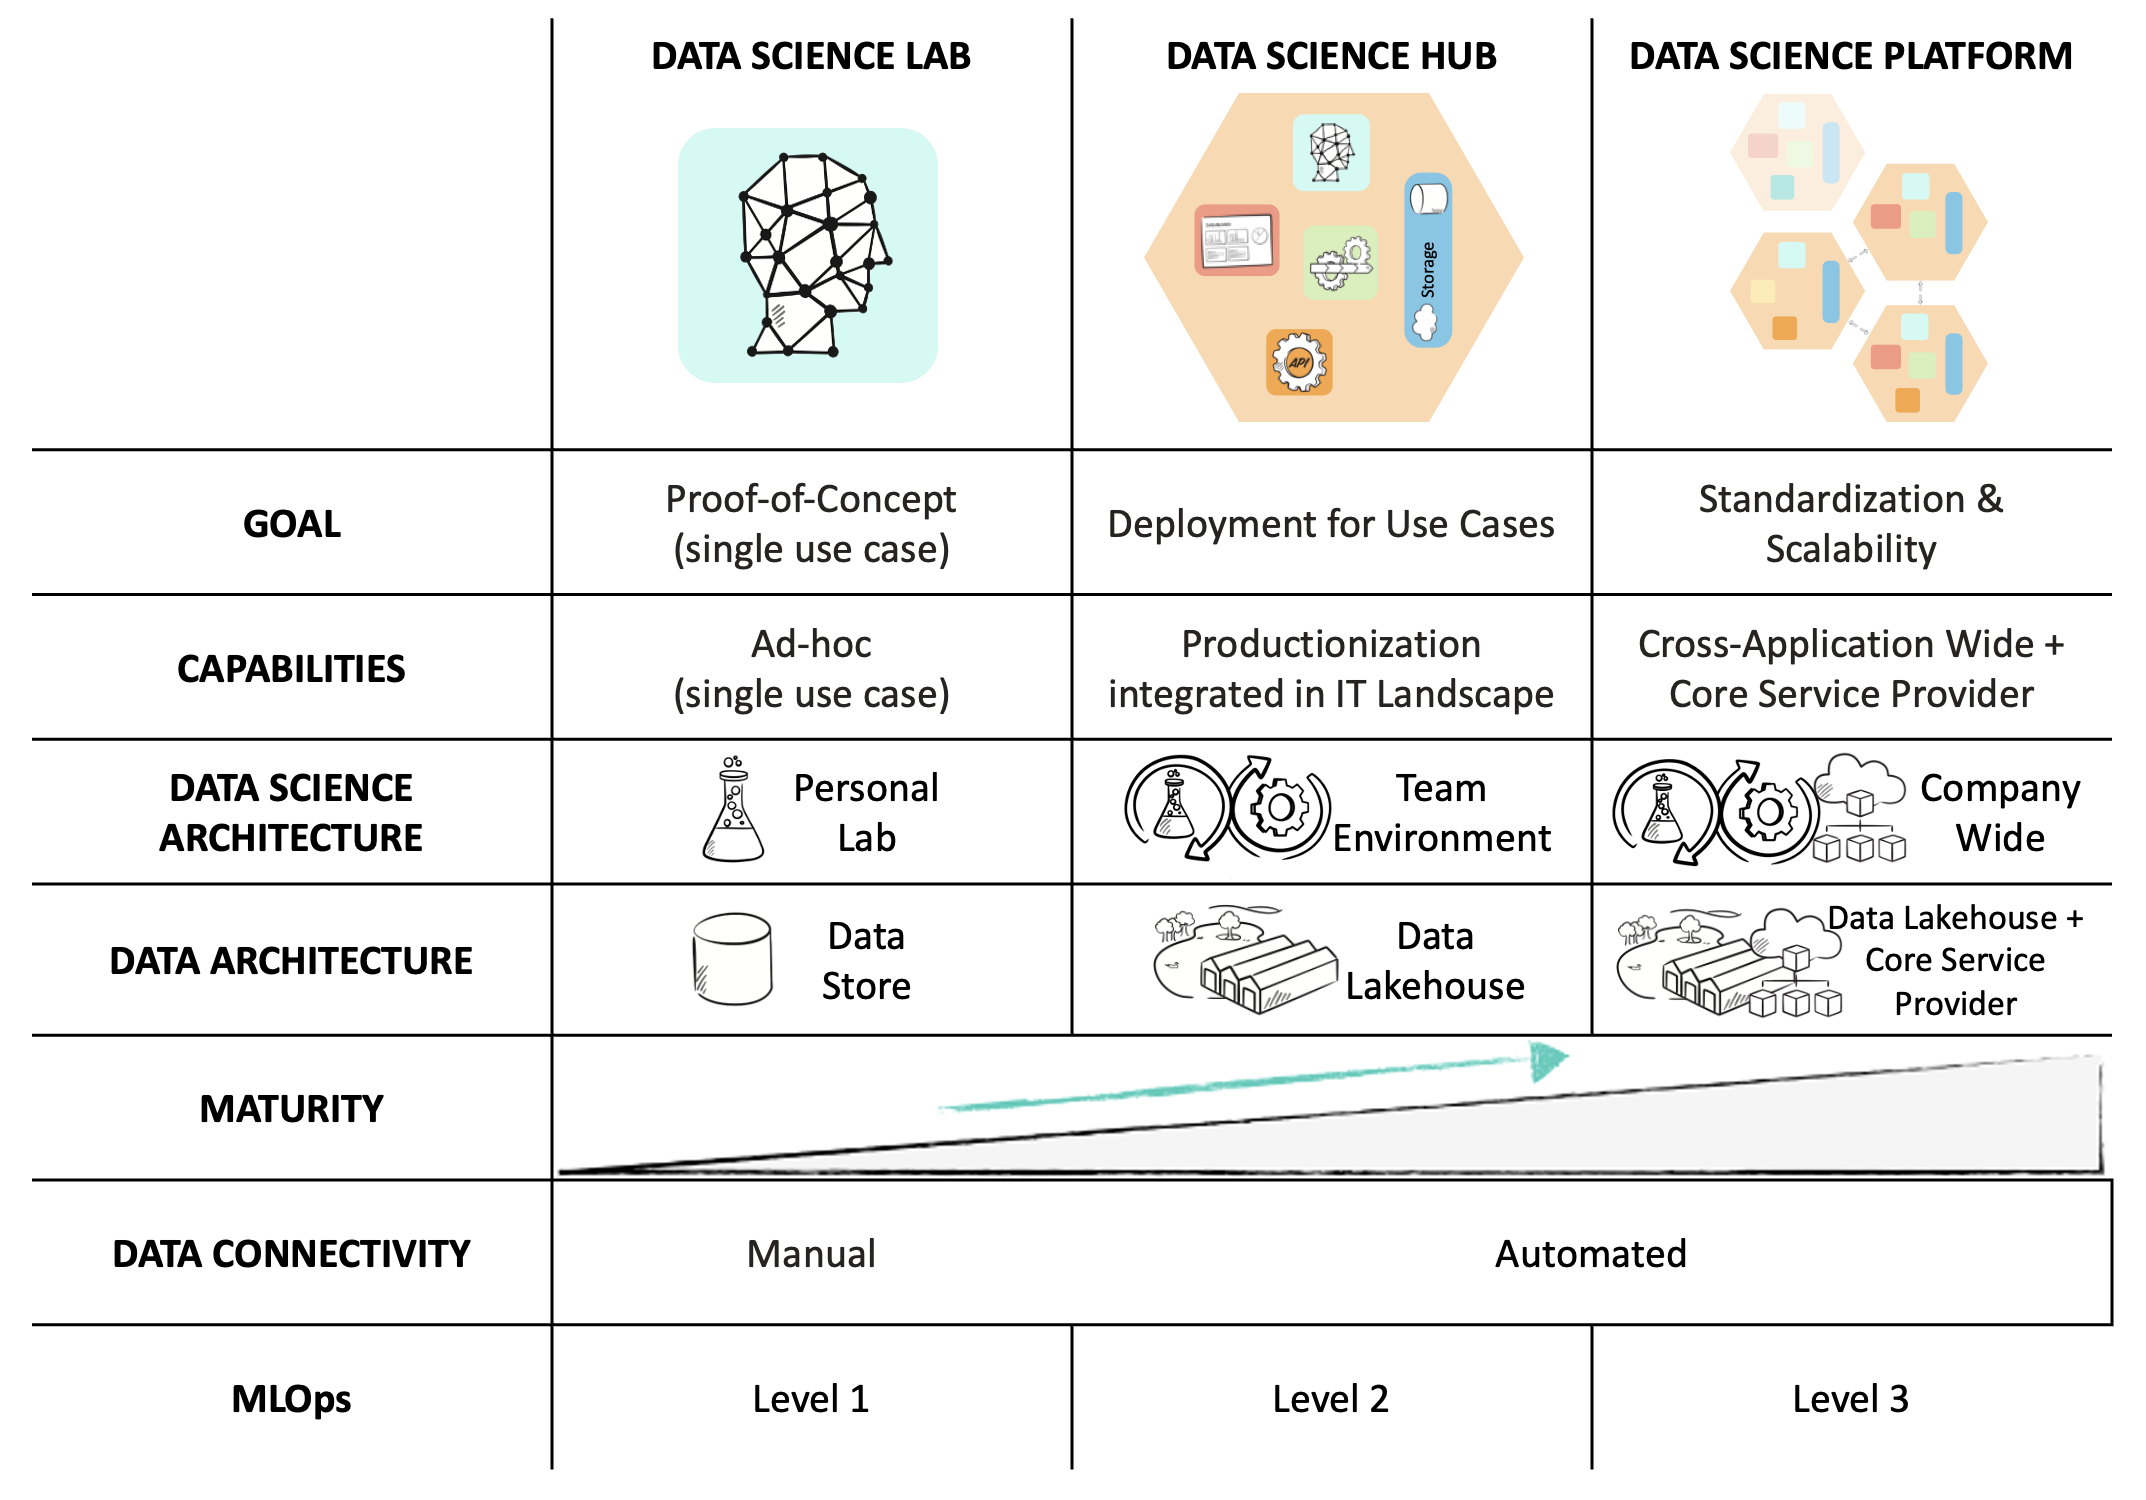 Figure 6: Data & Data Science Architecture